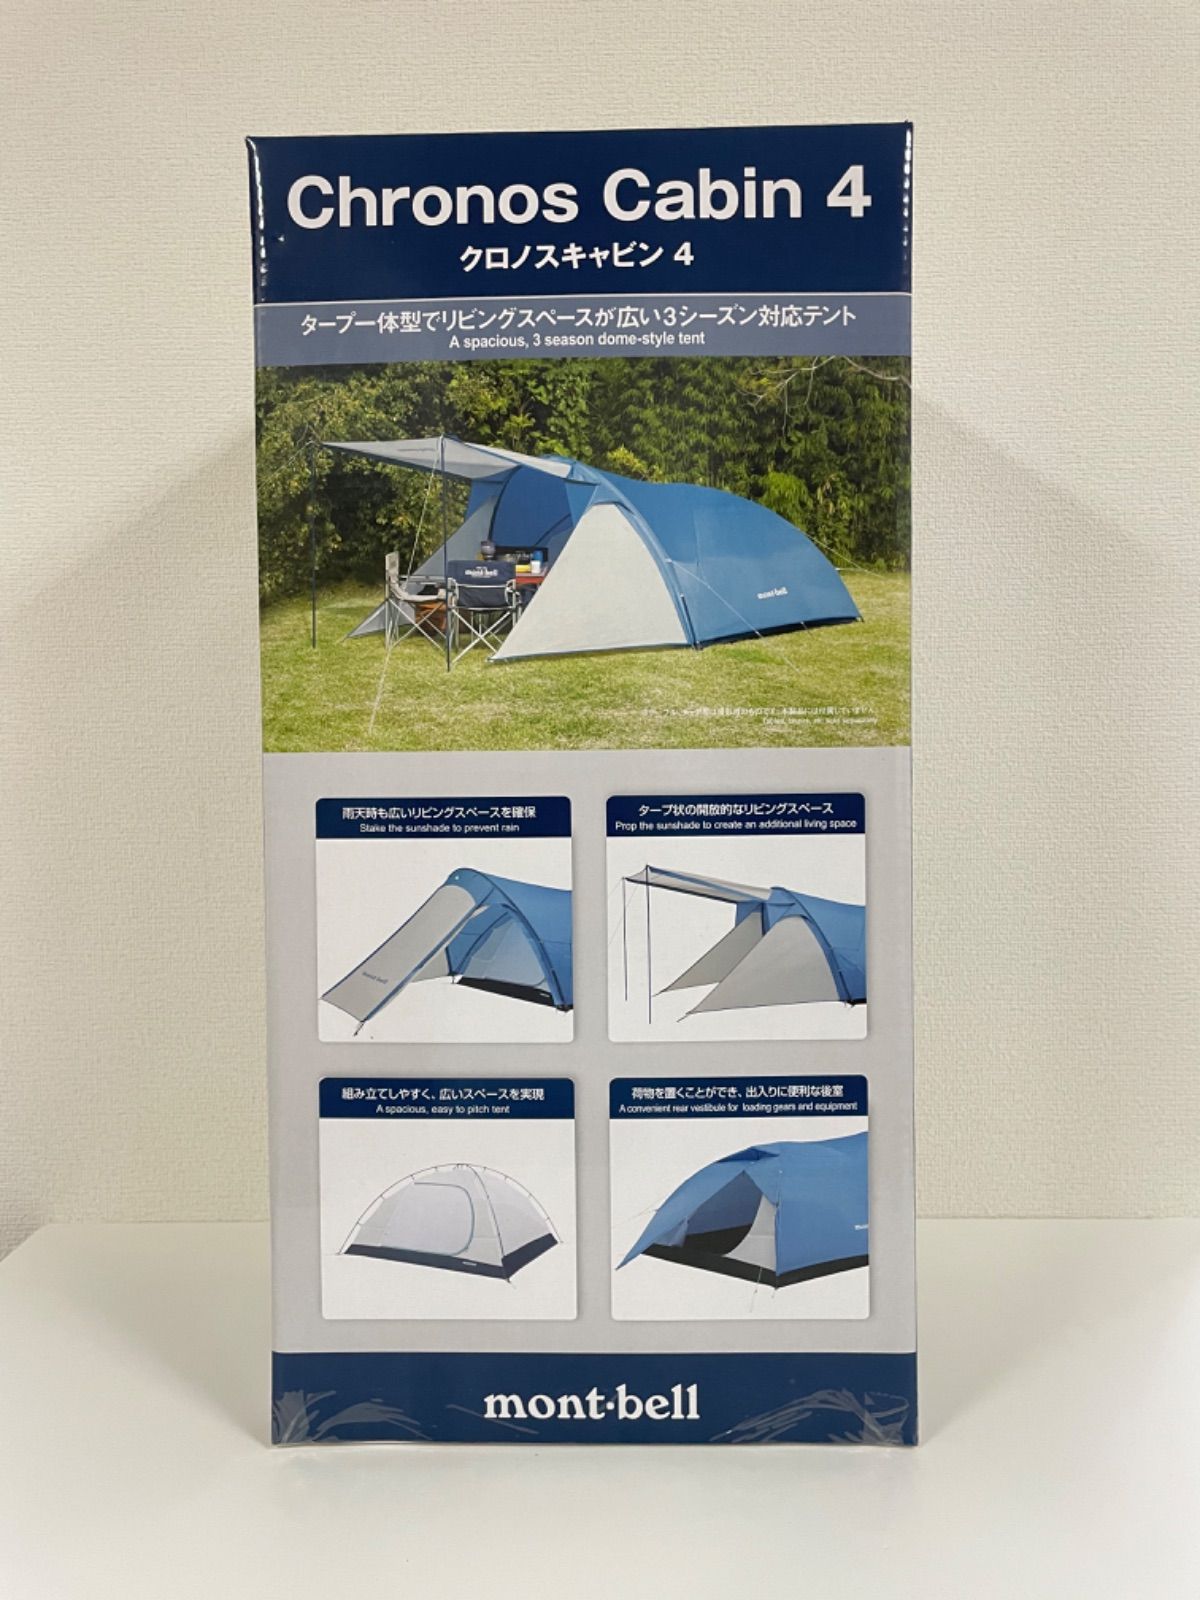 モンベル 新品 テント クロノスキャビン4 コンパクト ツールームテント